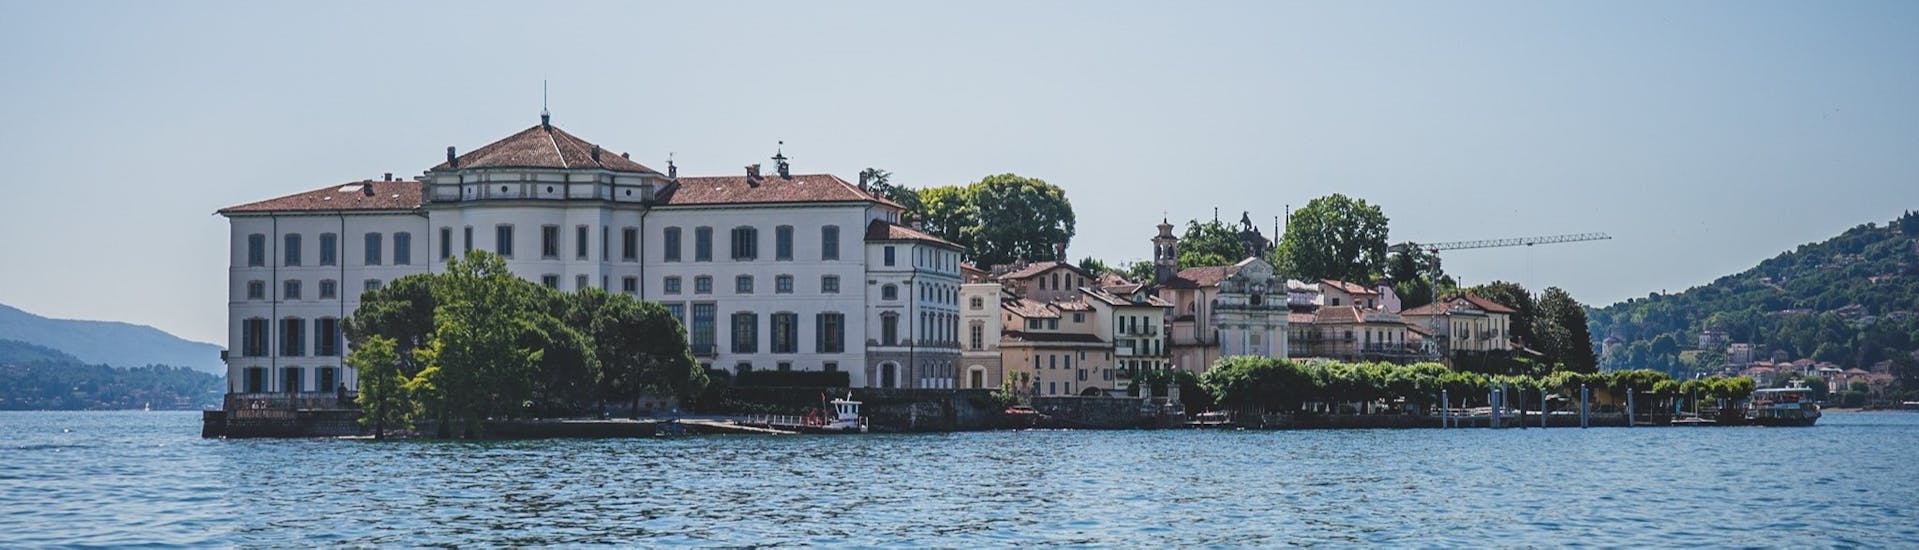 Vista del Palacio Borromeo accesible con el traslado en barco desde Baveno a Isola Bella e Isola dei Pescatori con Summer Boats Baveno.